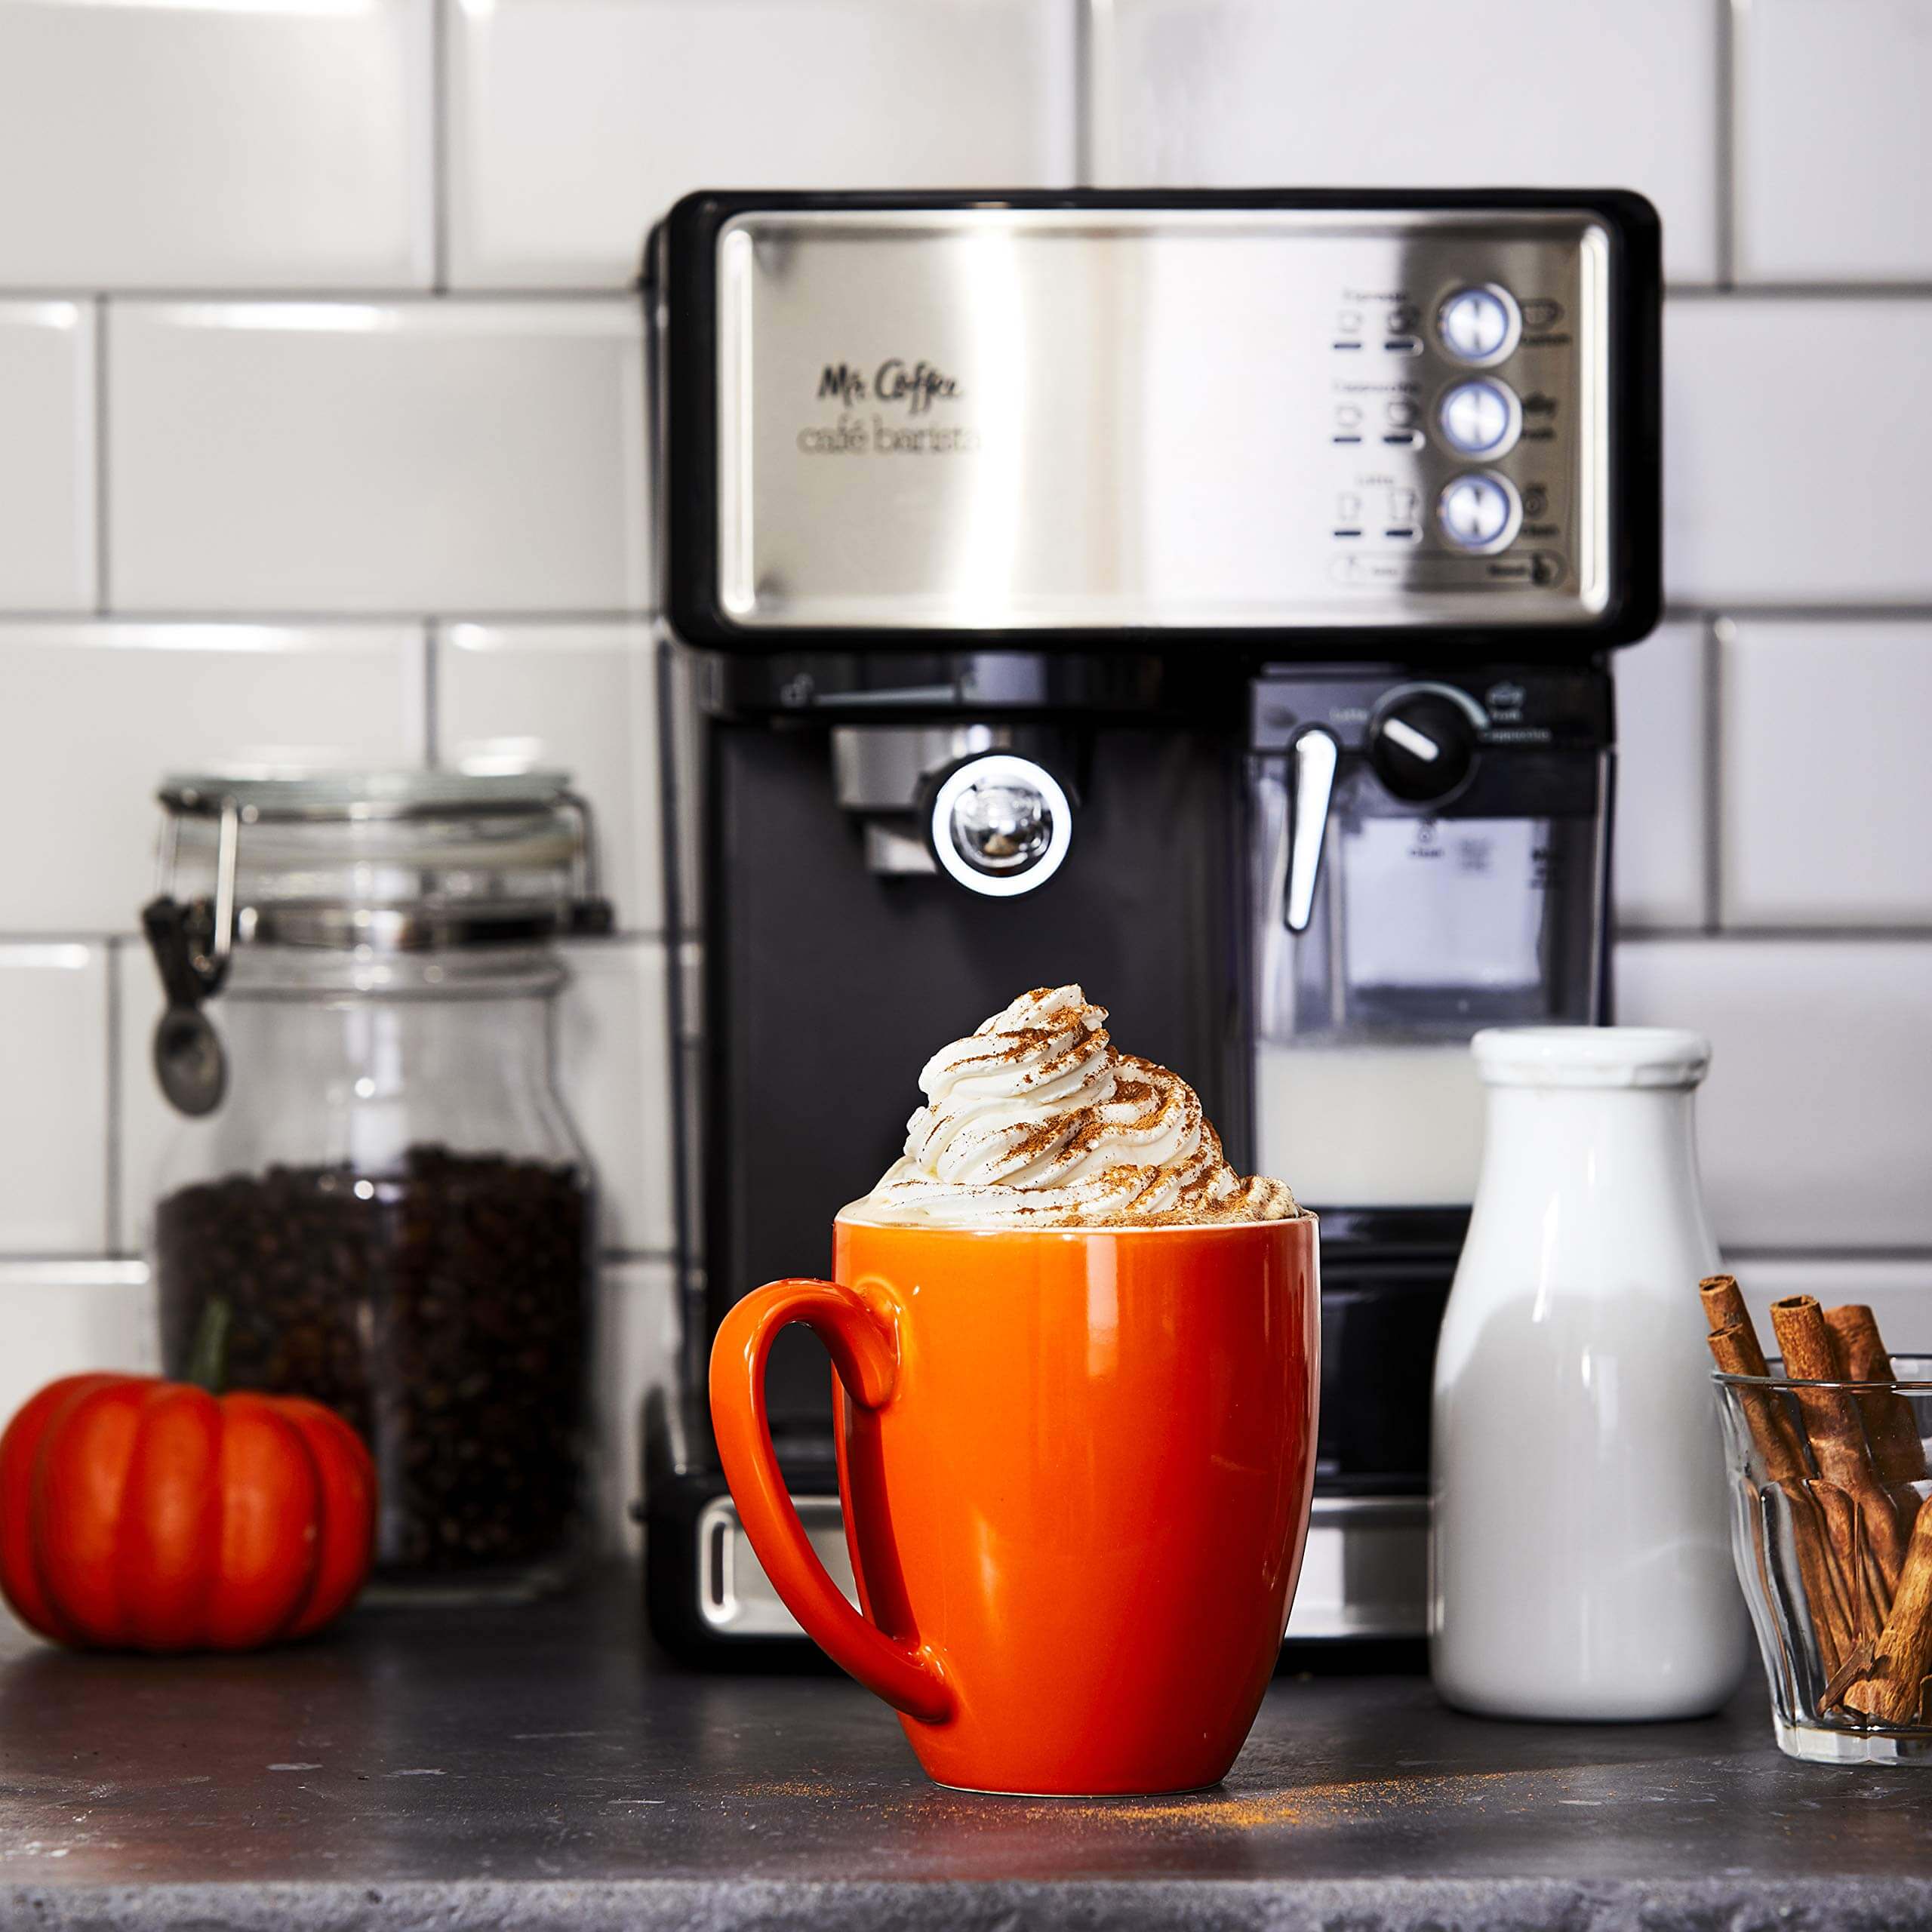 Mr. Coffee Espresso and Cappuccino Maker, best latte machine 2020, mr. coffee latte maker, mr. coffee espresso maker